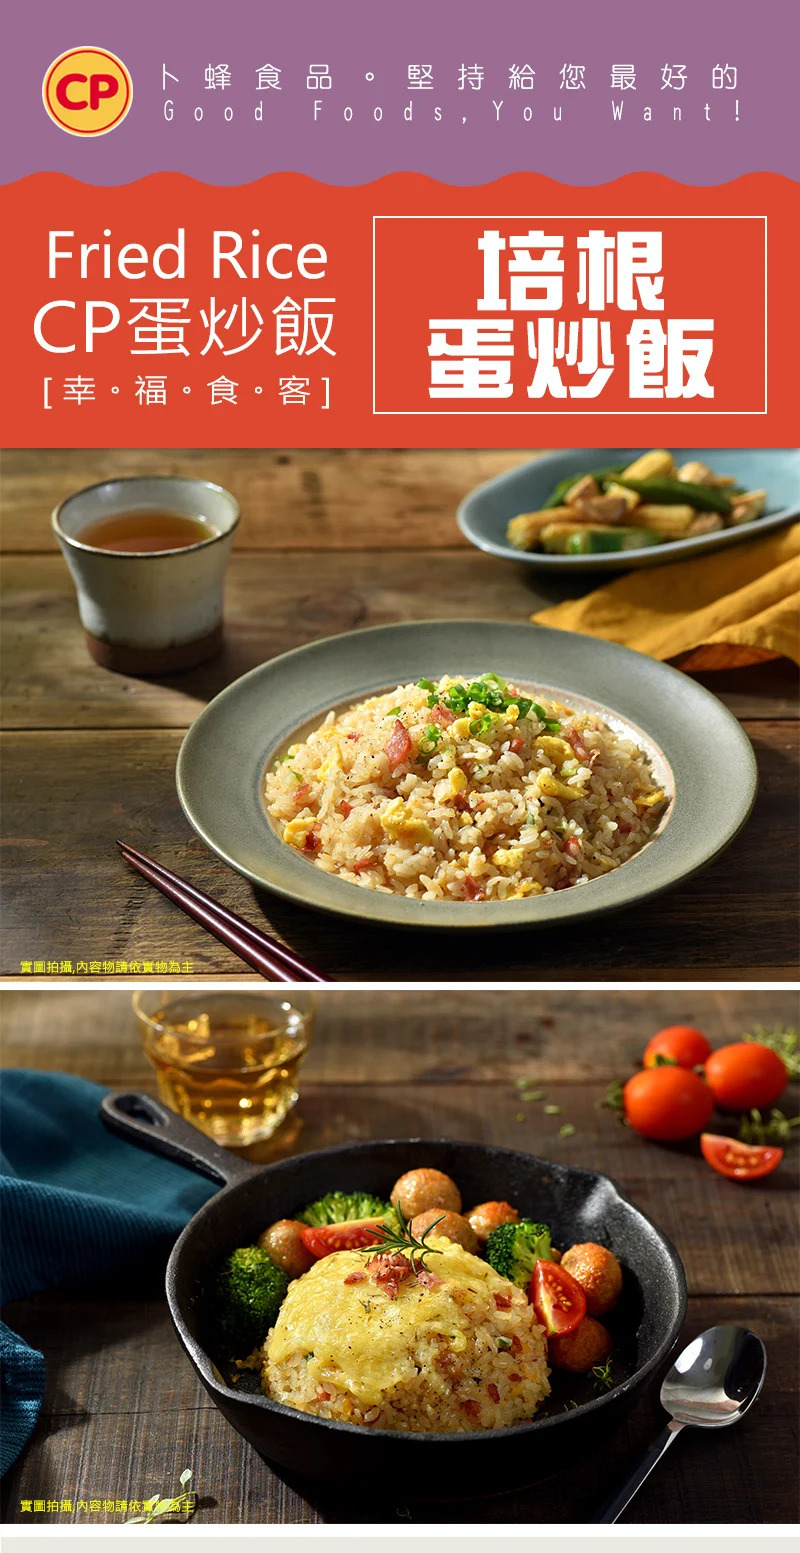 【卜蜂】超美味炒飯任選230g 培根/雞肉玉米/肉絲蛋炒飯 微波食品